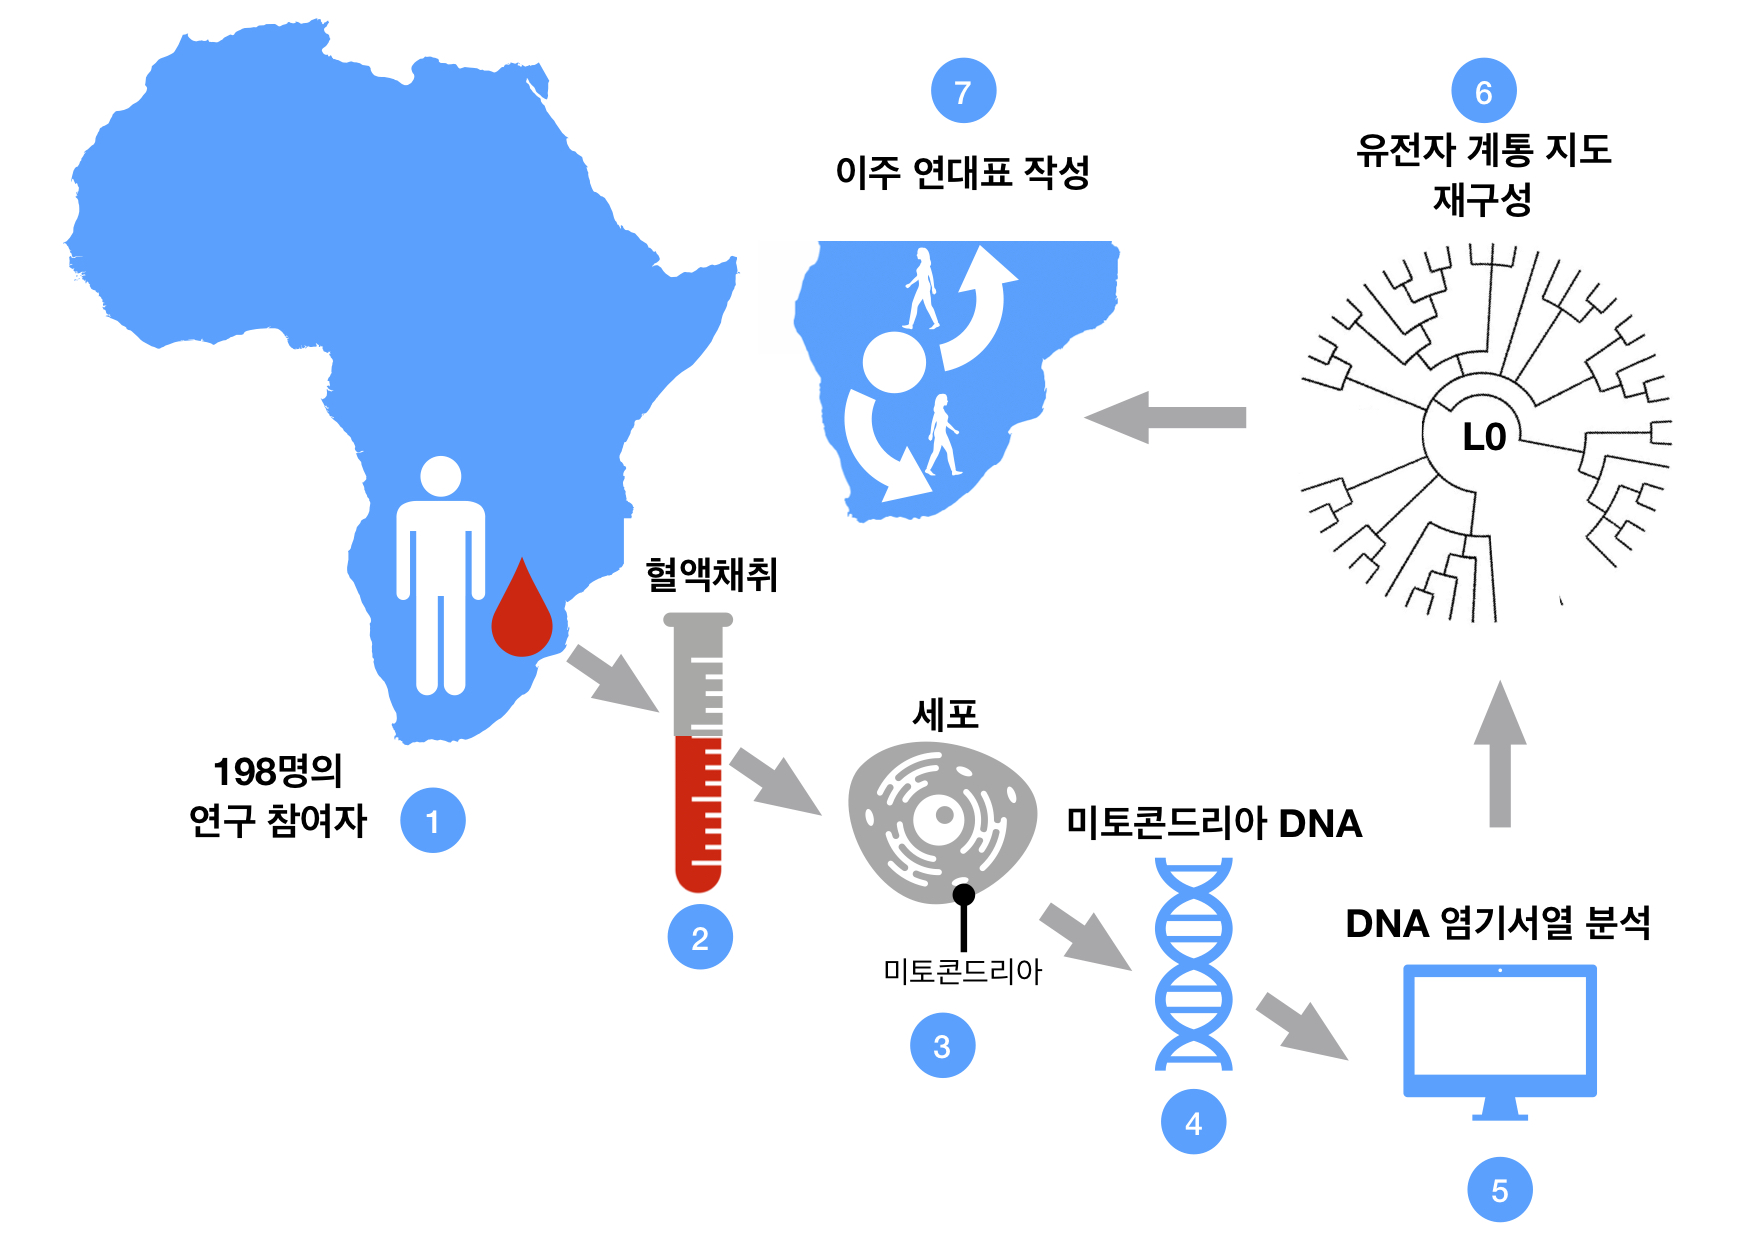 혈액 샘플로부터 L0 유전자 뿌리를 추적하는 과정